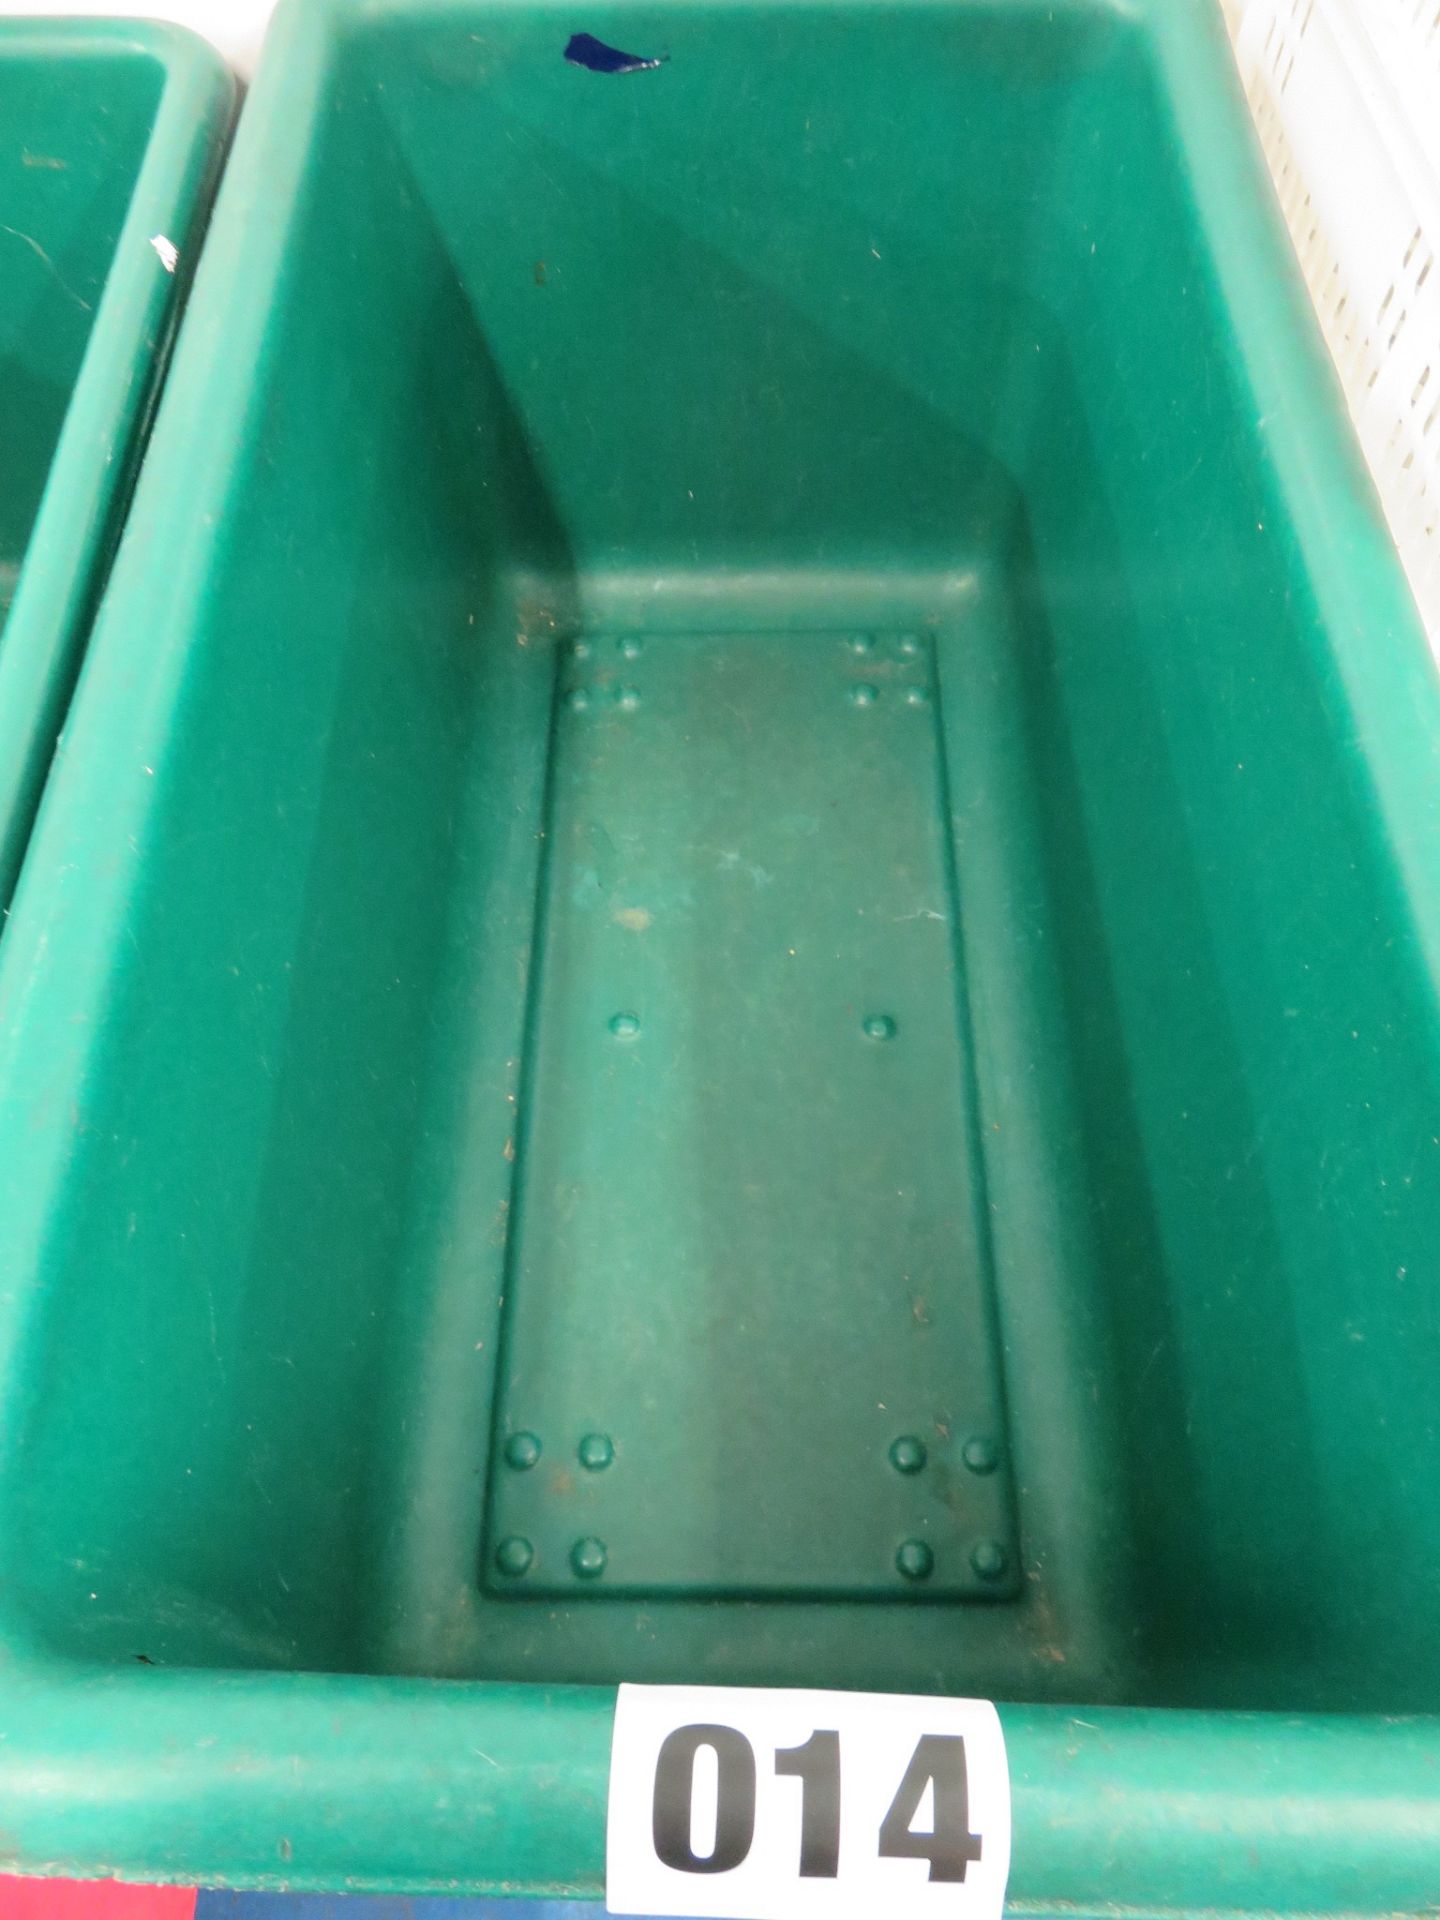 Mobile green bin aprox 1200 x 600 x 650mm deep. LO £5 - Image 2 of 2